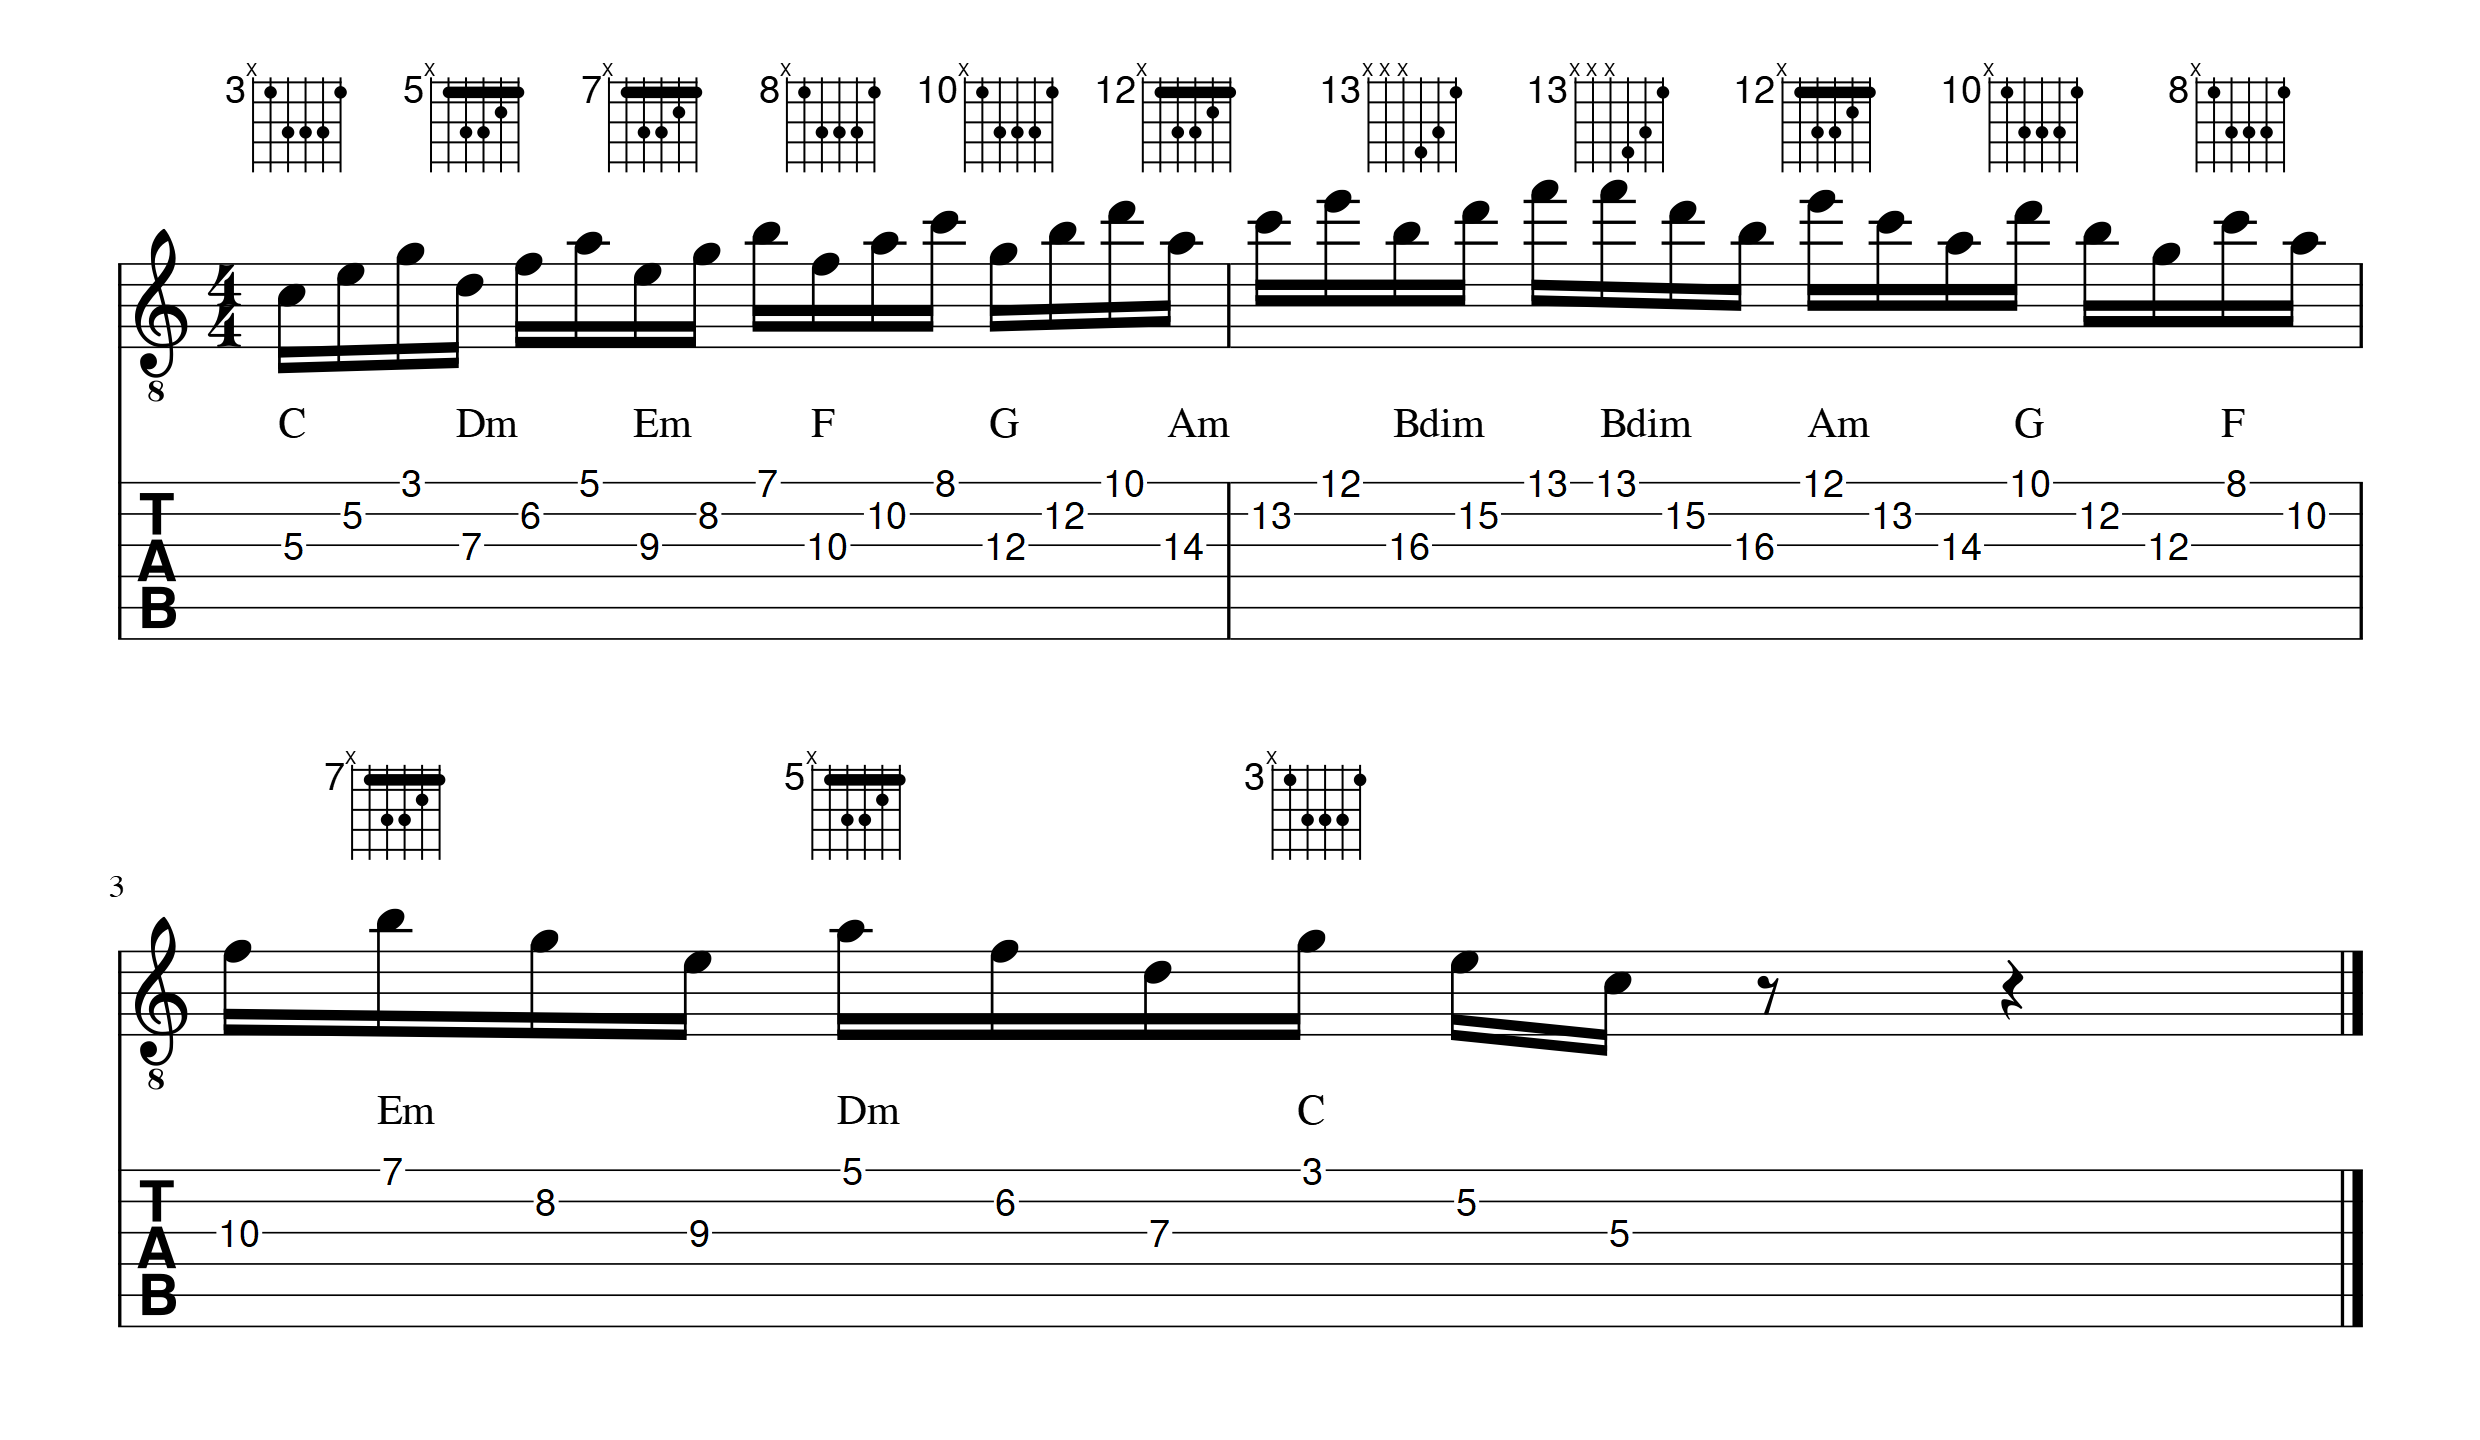 triade gamme Do majeurharmonisee apprendre la guitare